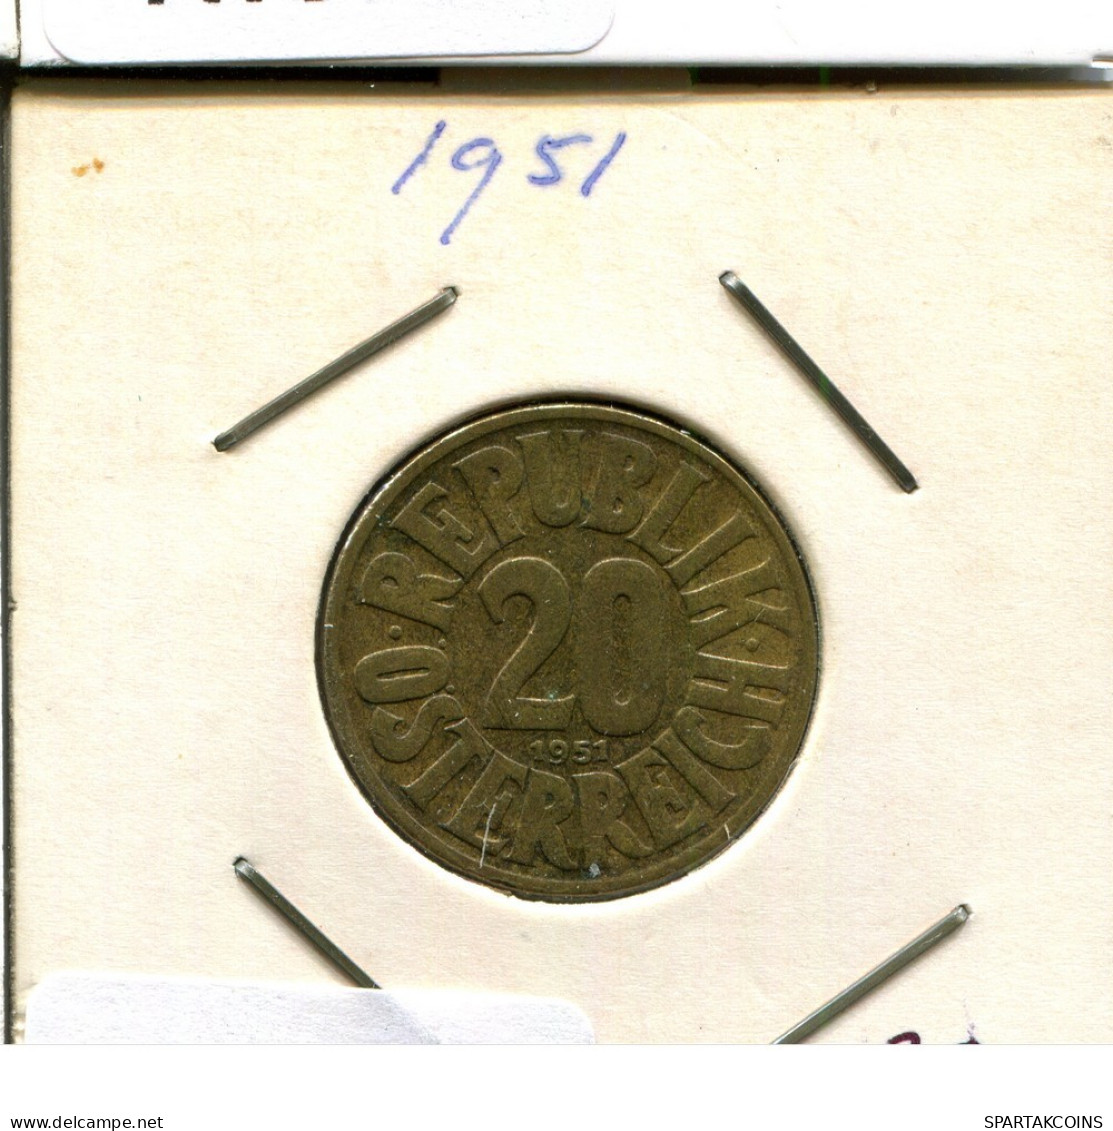 20 GROSCHEN 1951 AUSTRIA Coin #AT579.U.A - Oostenrijk